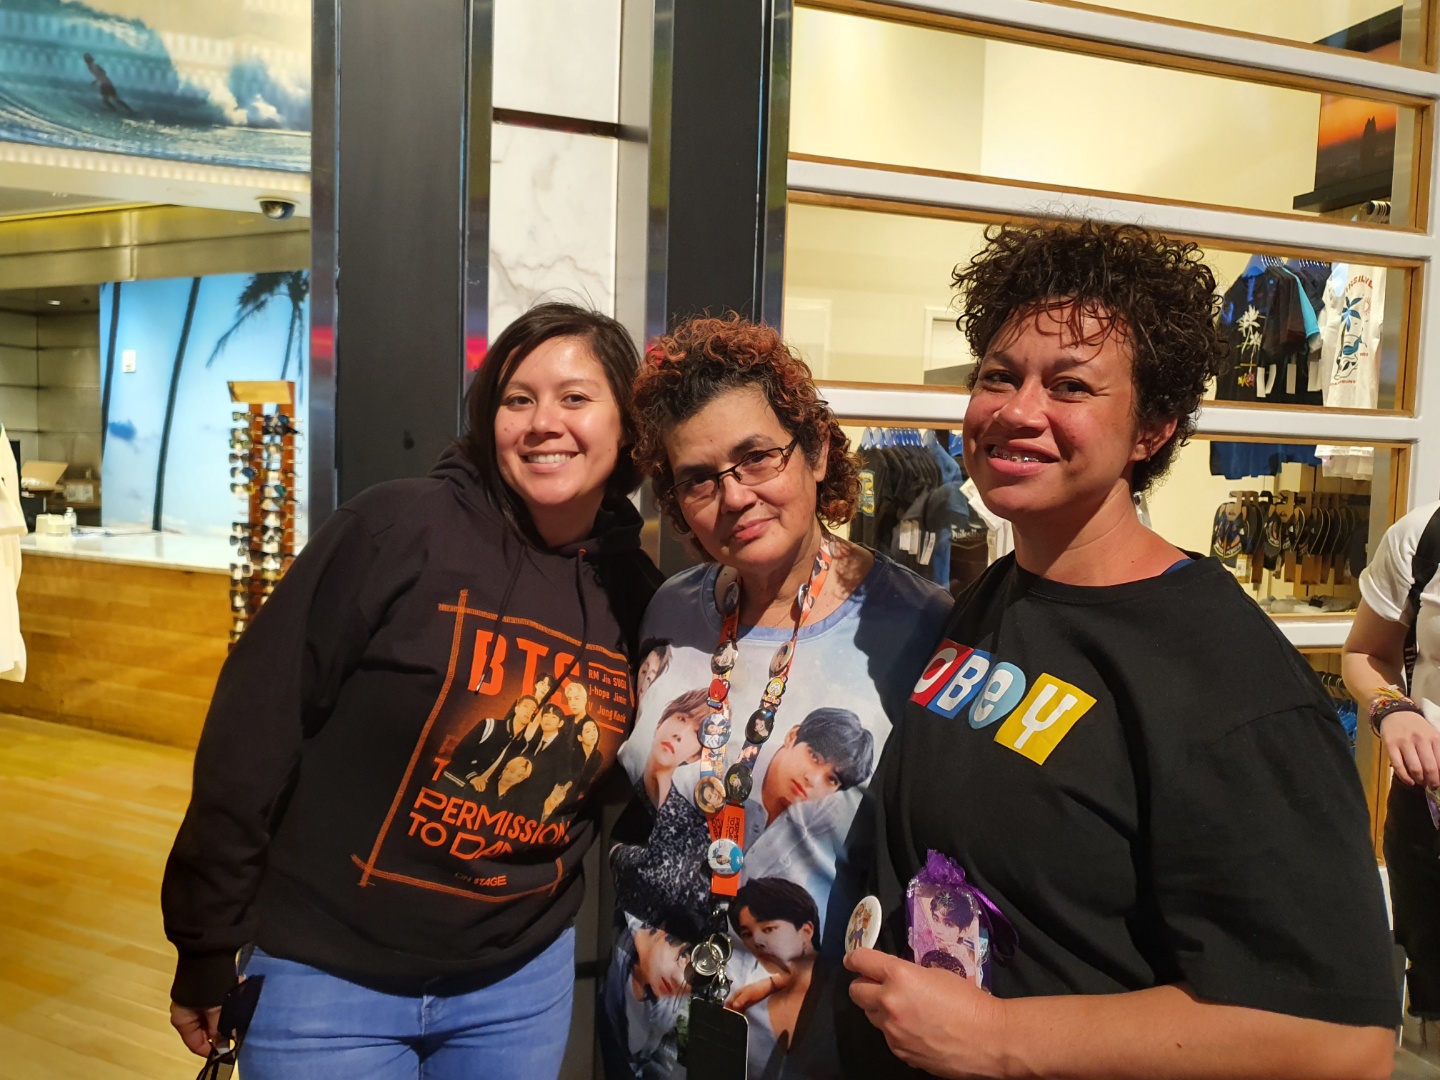 8일(현지시간) 그룹 방탄소년단(BTS)의 콘서트에 참석하기 위해 미국 라스베이거스를 찾은 줄리(왼쪽부터), 캐시, 레이라니가 환하게 웃고 있다. BTS가 그려진 티셔츠를 입고 있는 모습이 눈에 띈다.